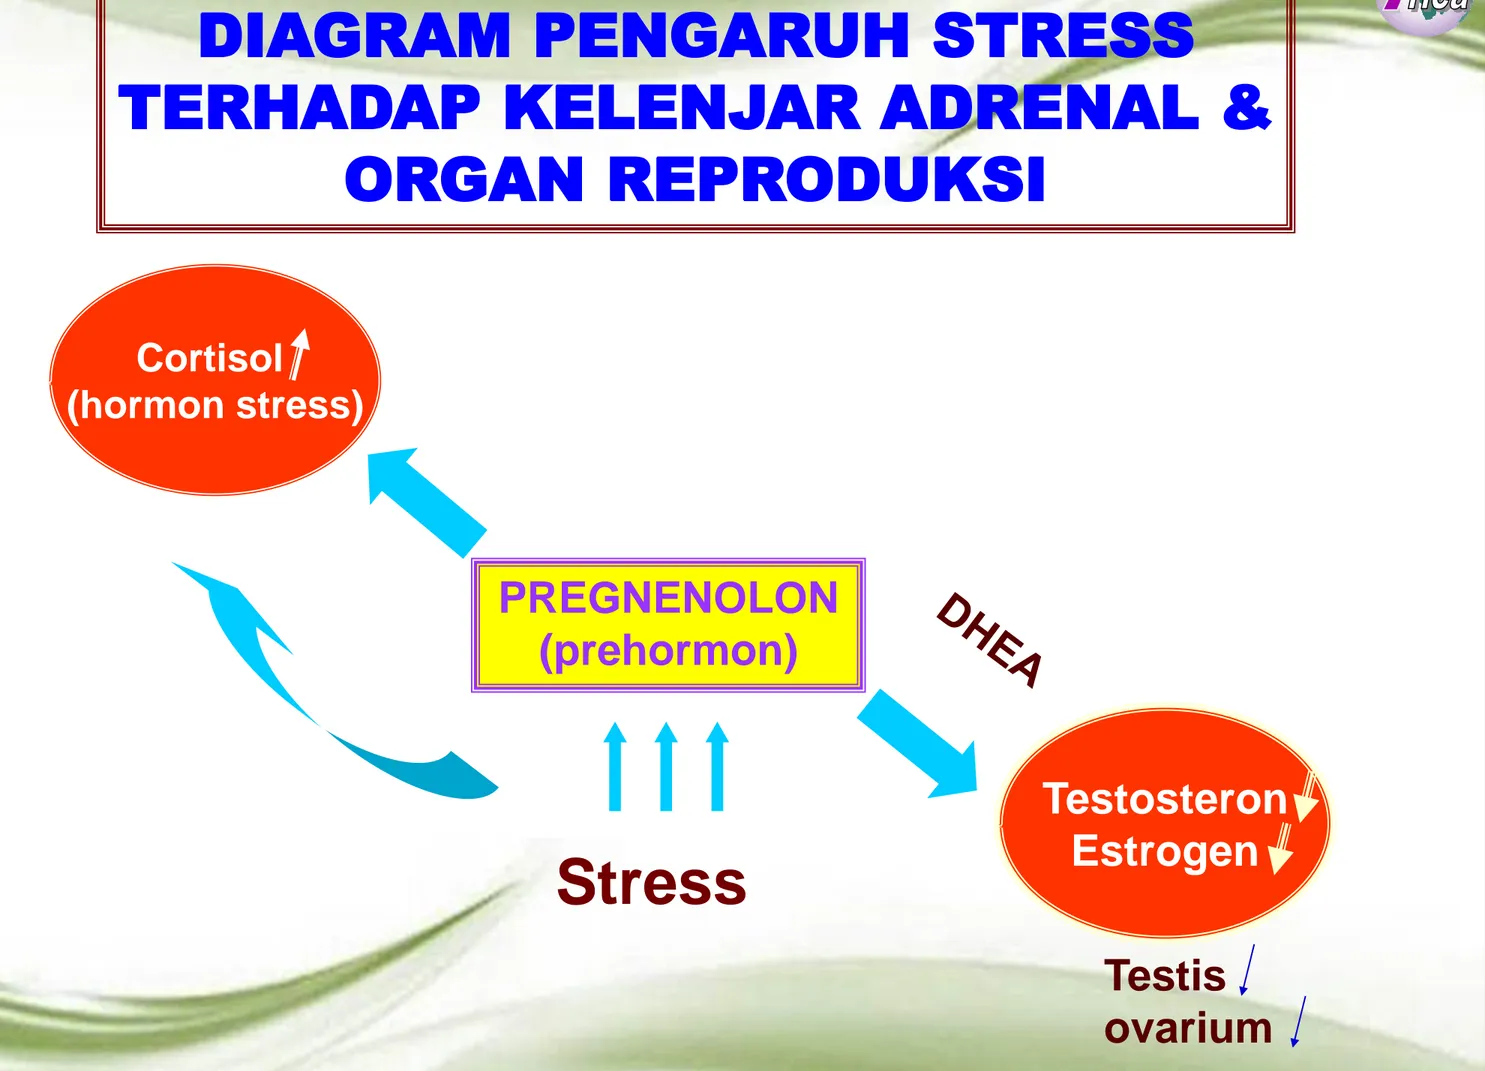 DIAGRAM PENGARUH STRESS 